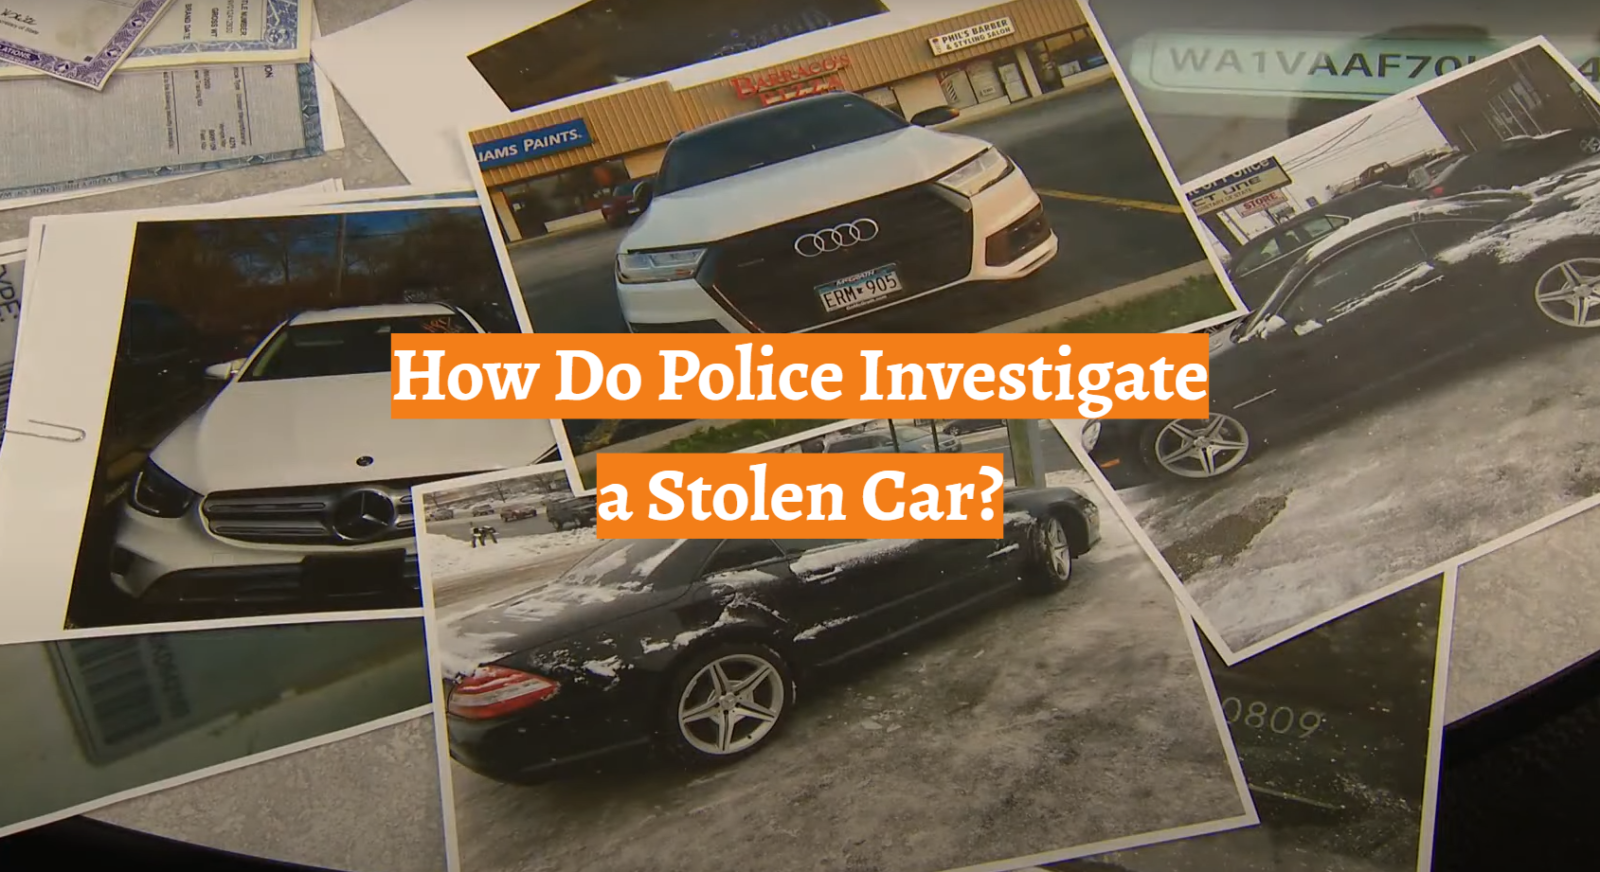 How Do Police Investigate a Stolen Car?